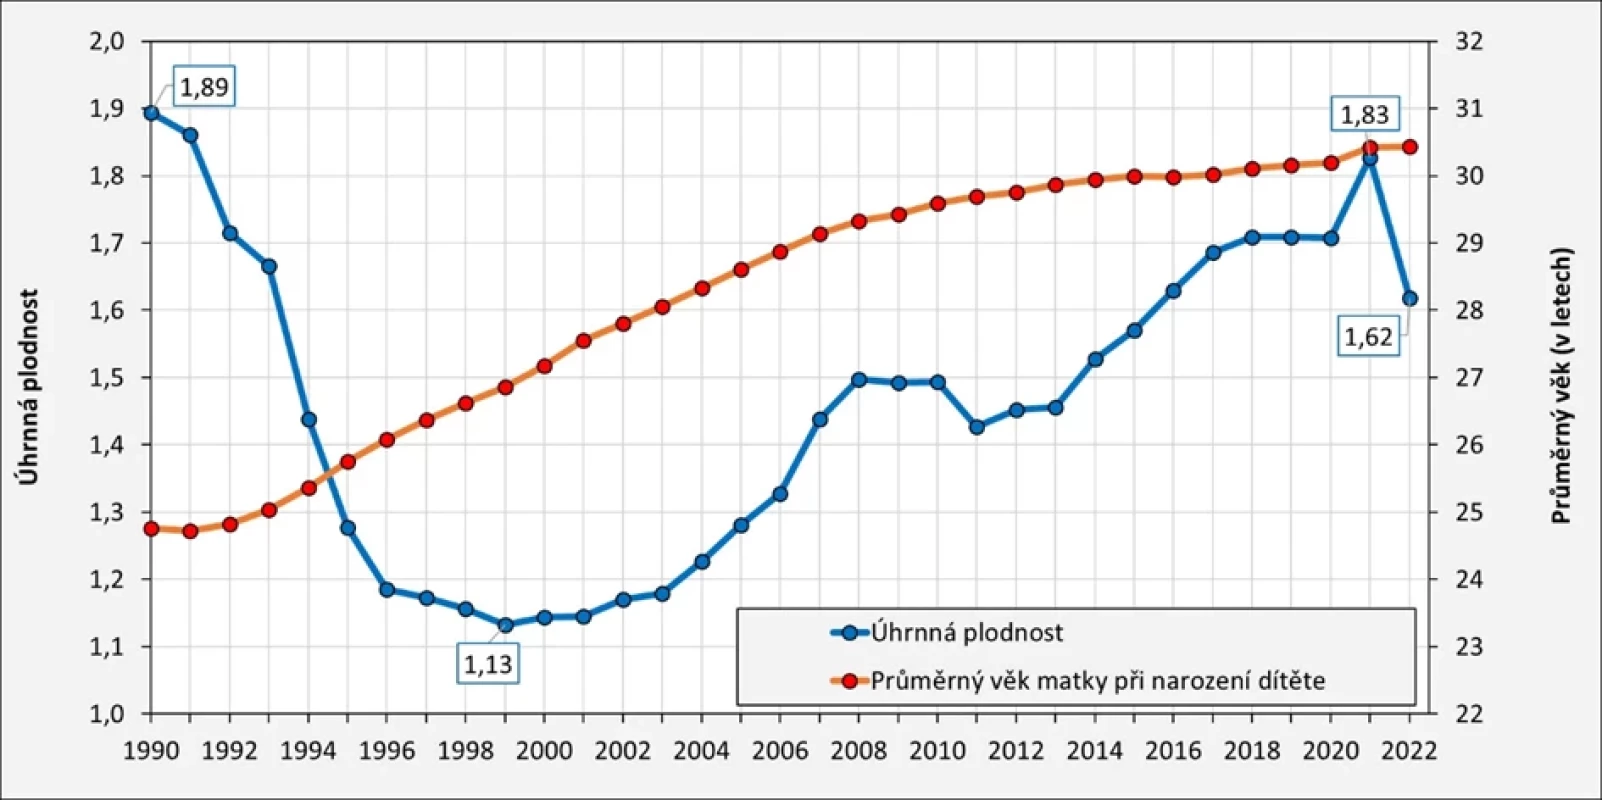 Vývoj úhrnné plodnosti a průměrného věku žen při narození prvního dítěte v Česku v letech 1990–2022